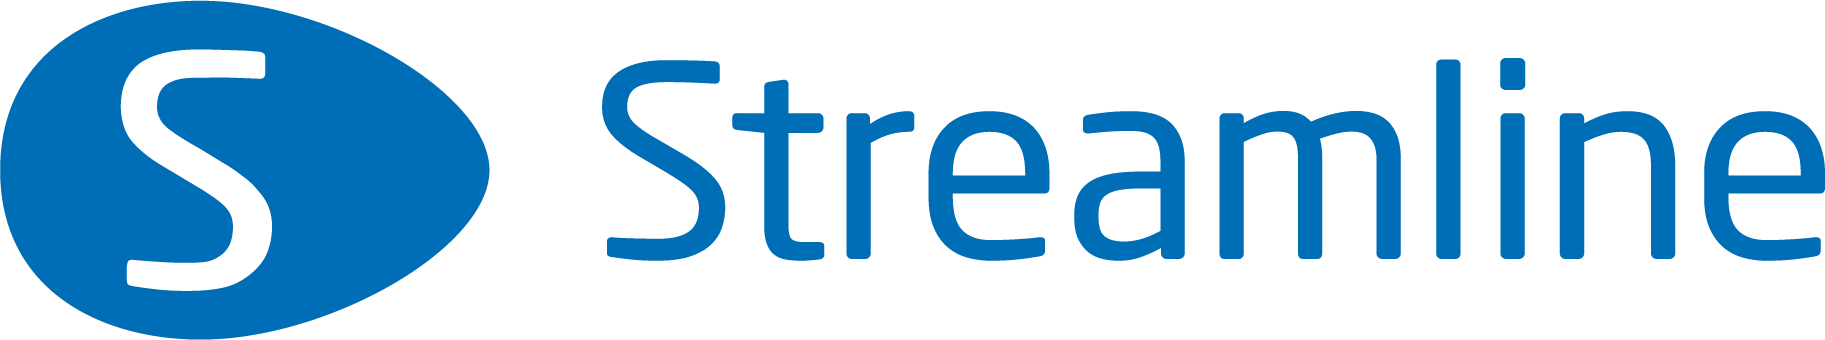 Streamline logo bleu